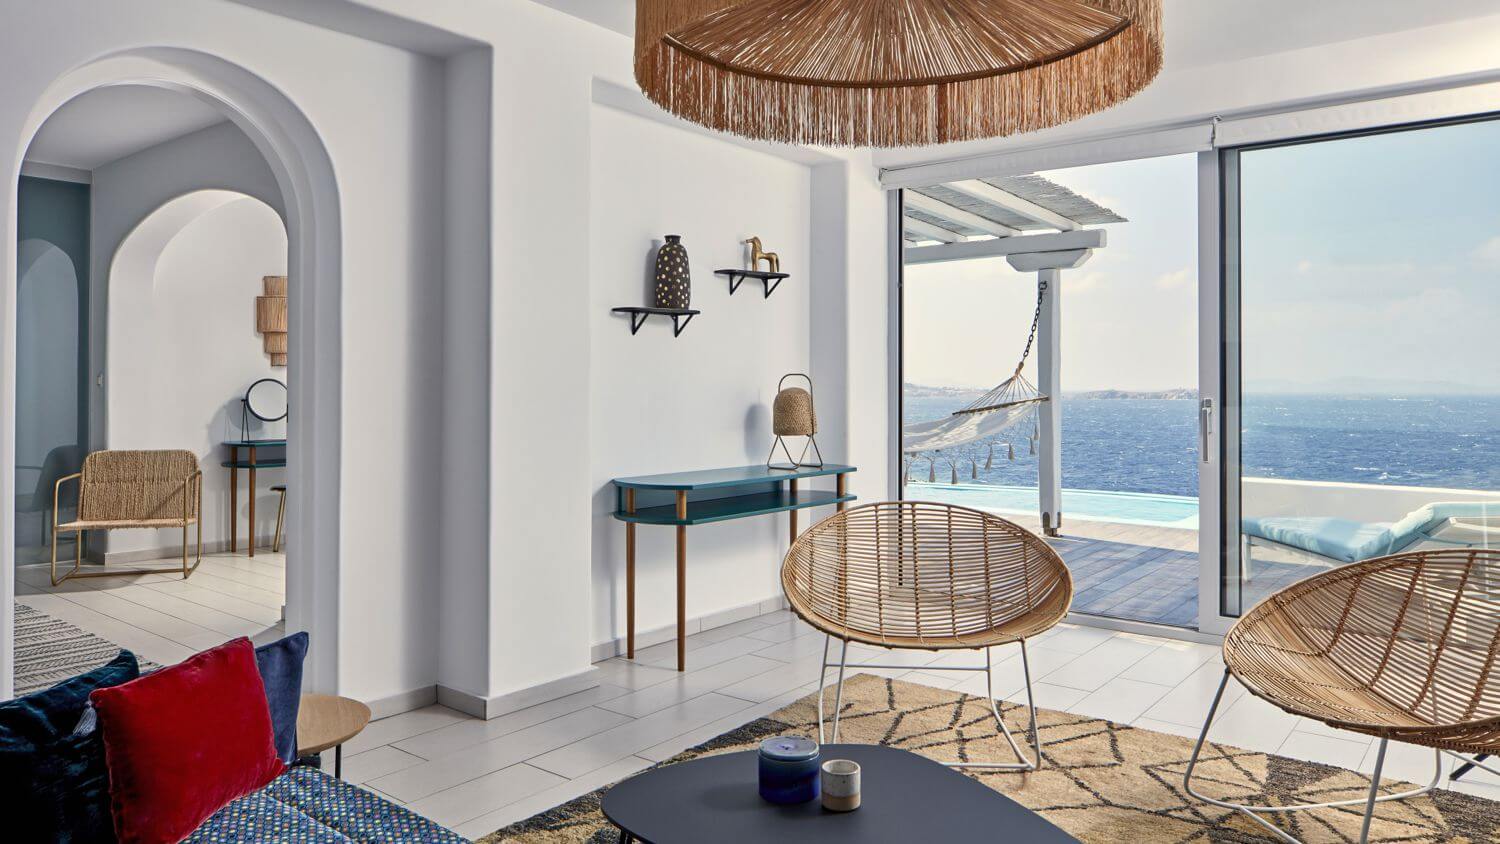 Màu xanh ngọc trong thiết kế nội thất Địa Trung Hải